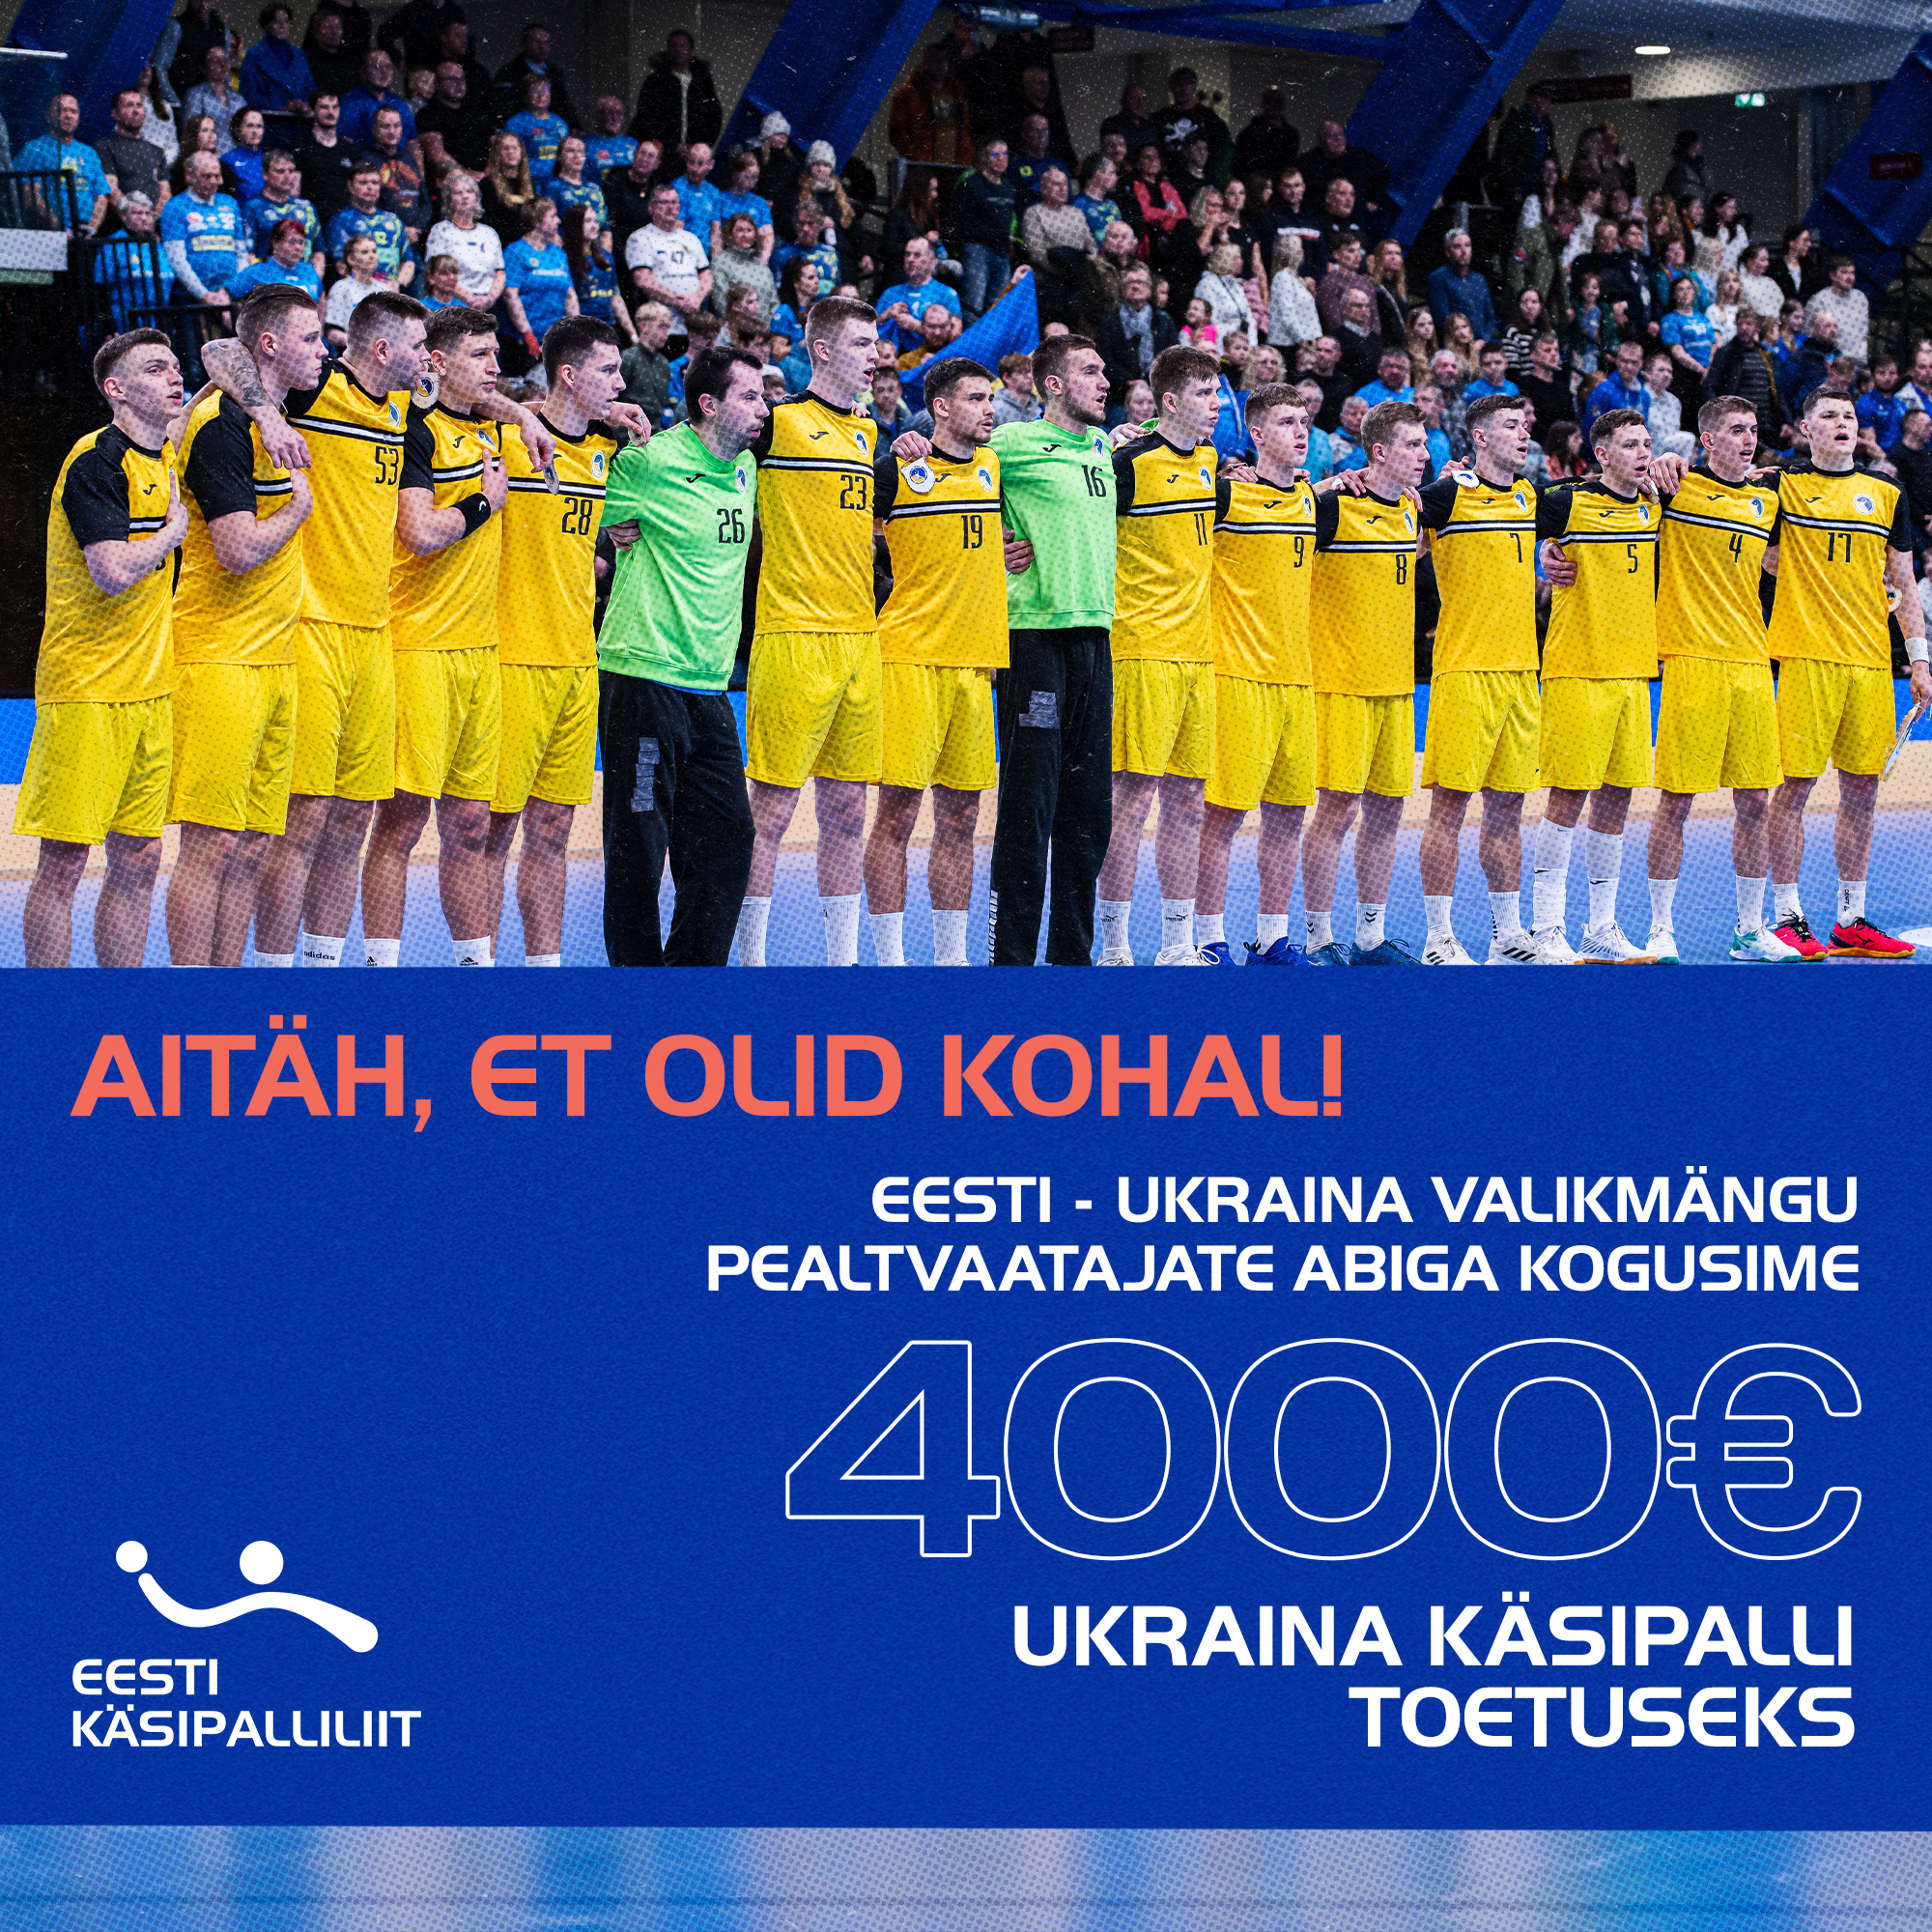 Eesti käsipallifännid kogusid Ukraina toetuseks 4000 eurot